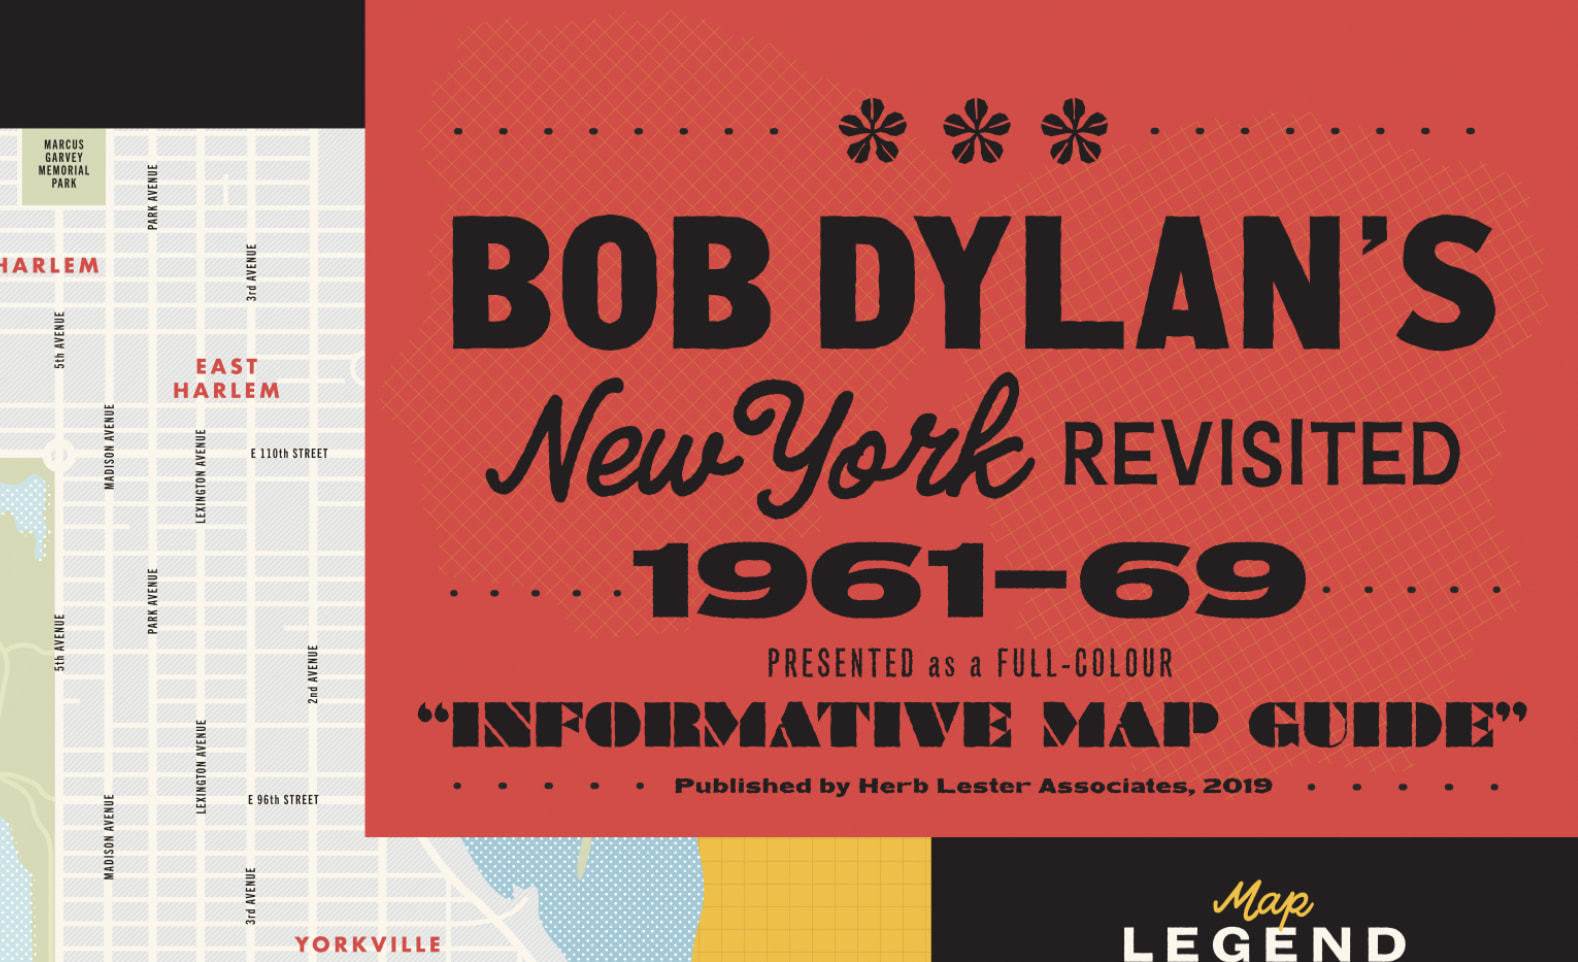 Bob Dylan’s NY